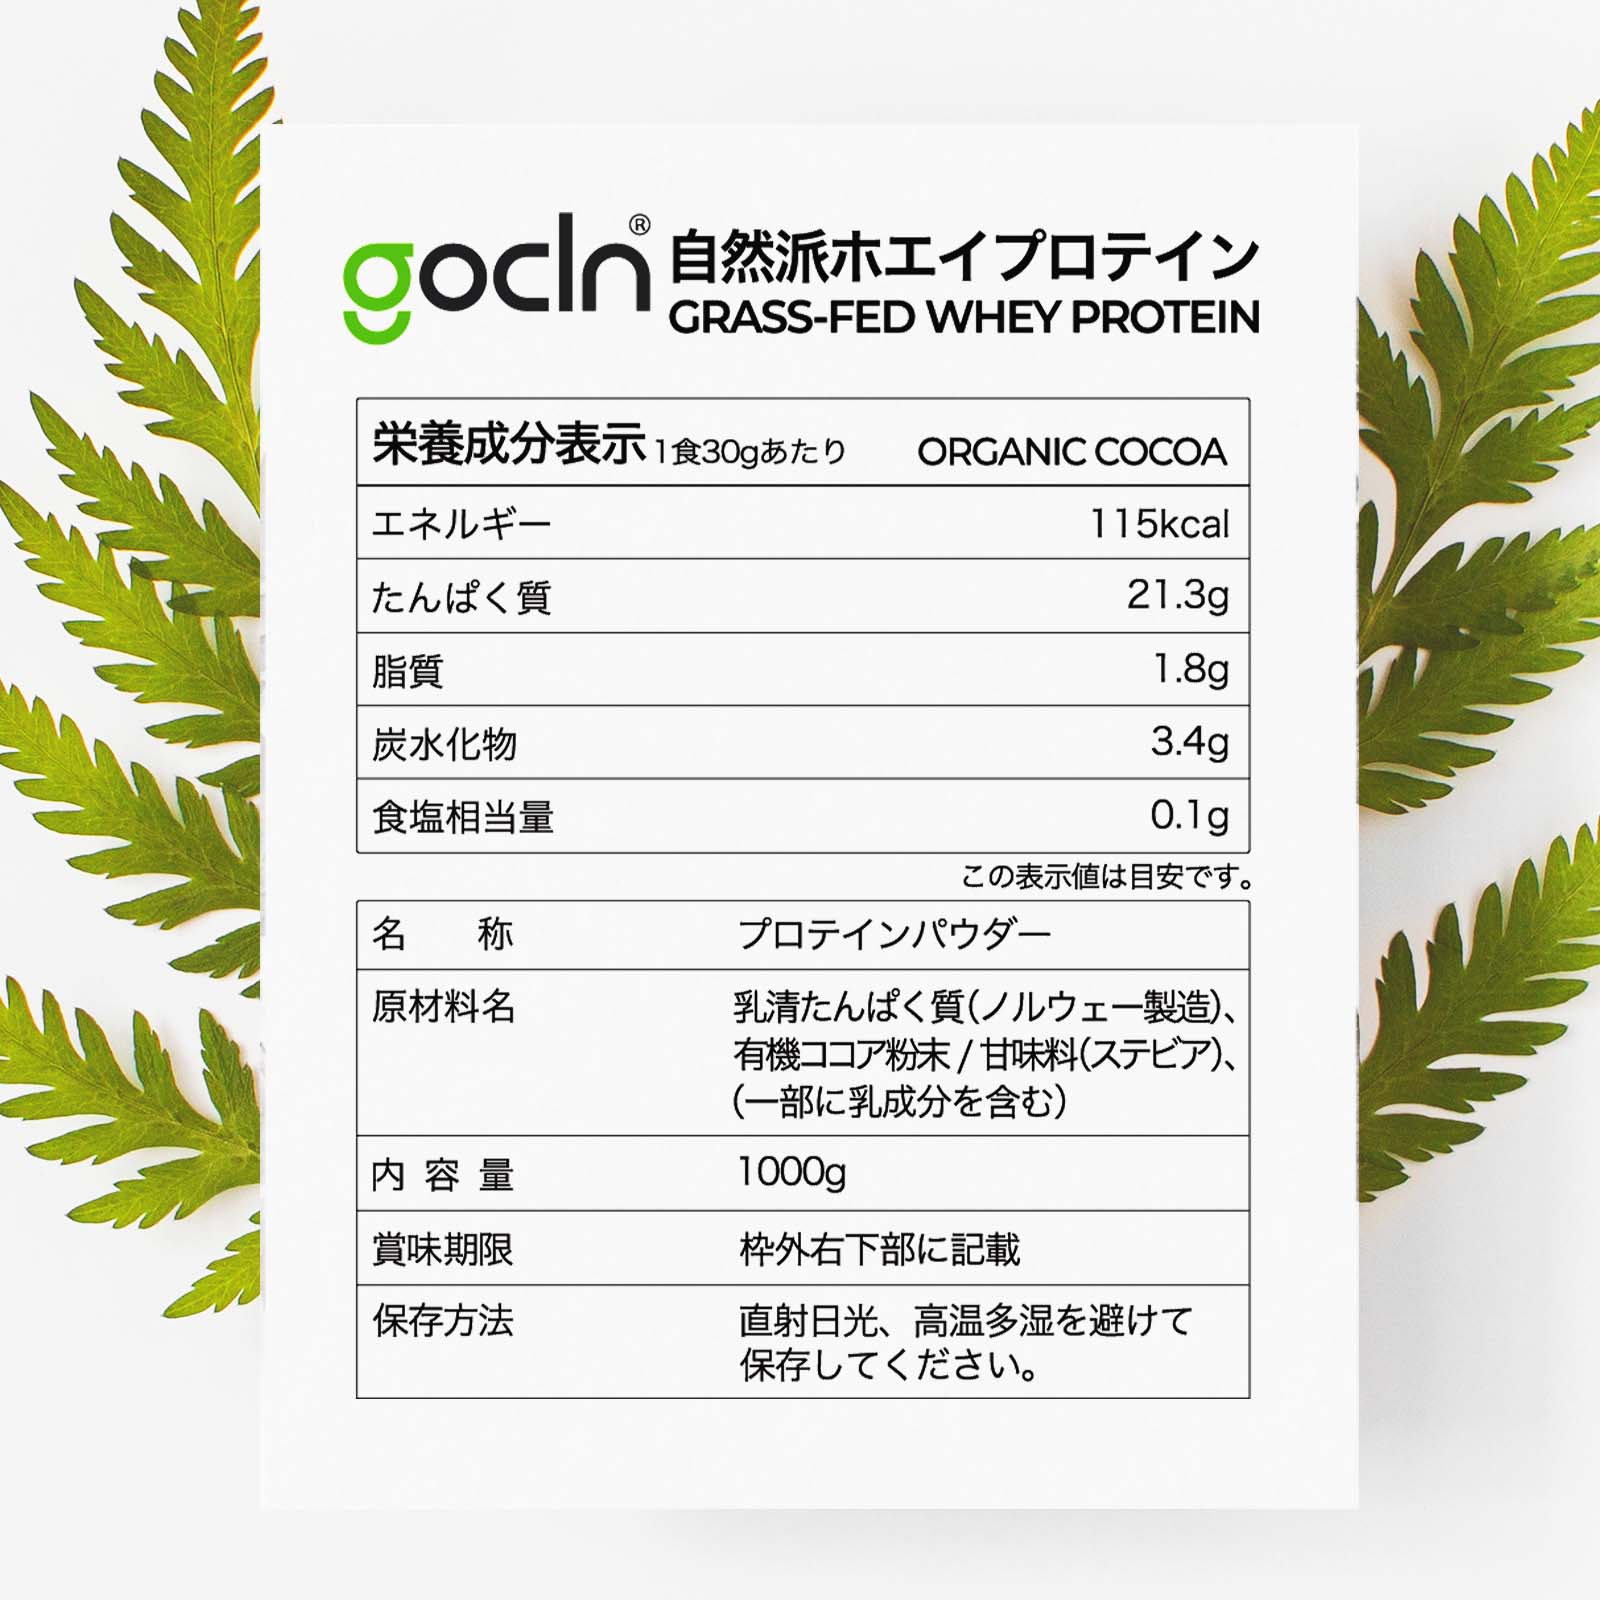 グラスフェッド自然派ホエイプロテイン ココア味 1000g - Fuji Organics